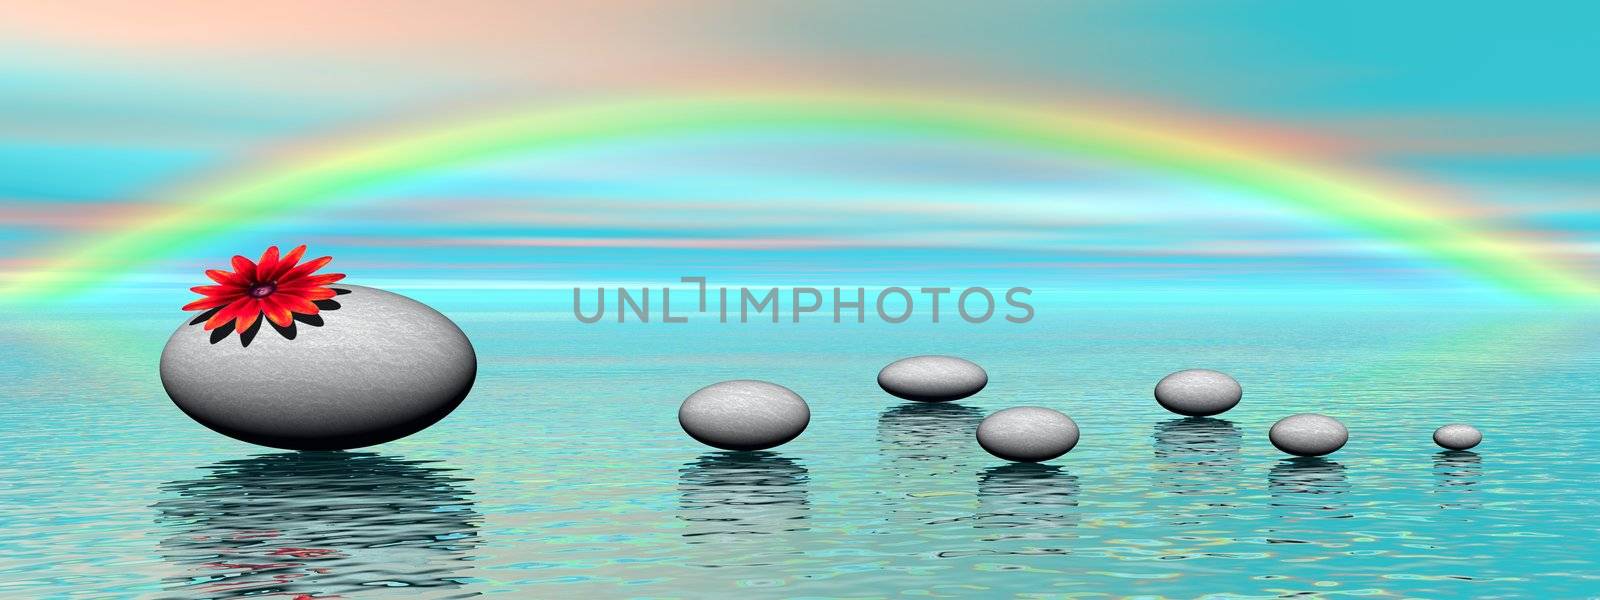 Zen stones and rainbow by Elenaphotos21